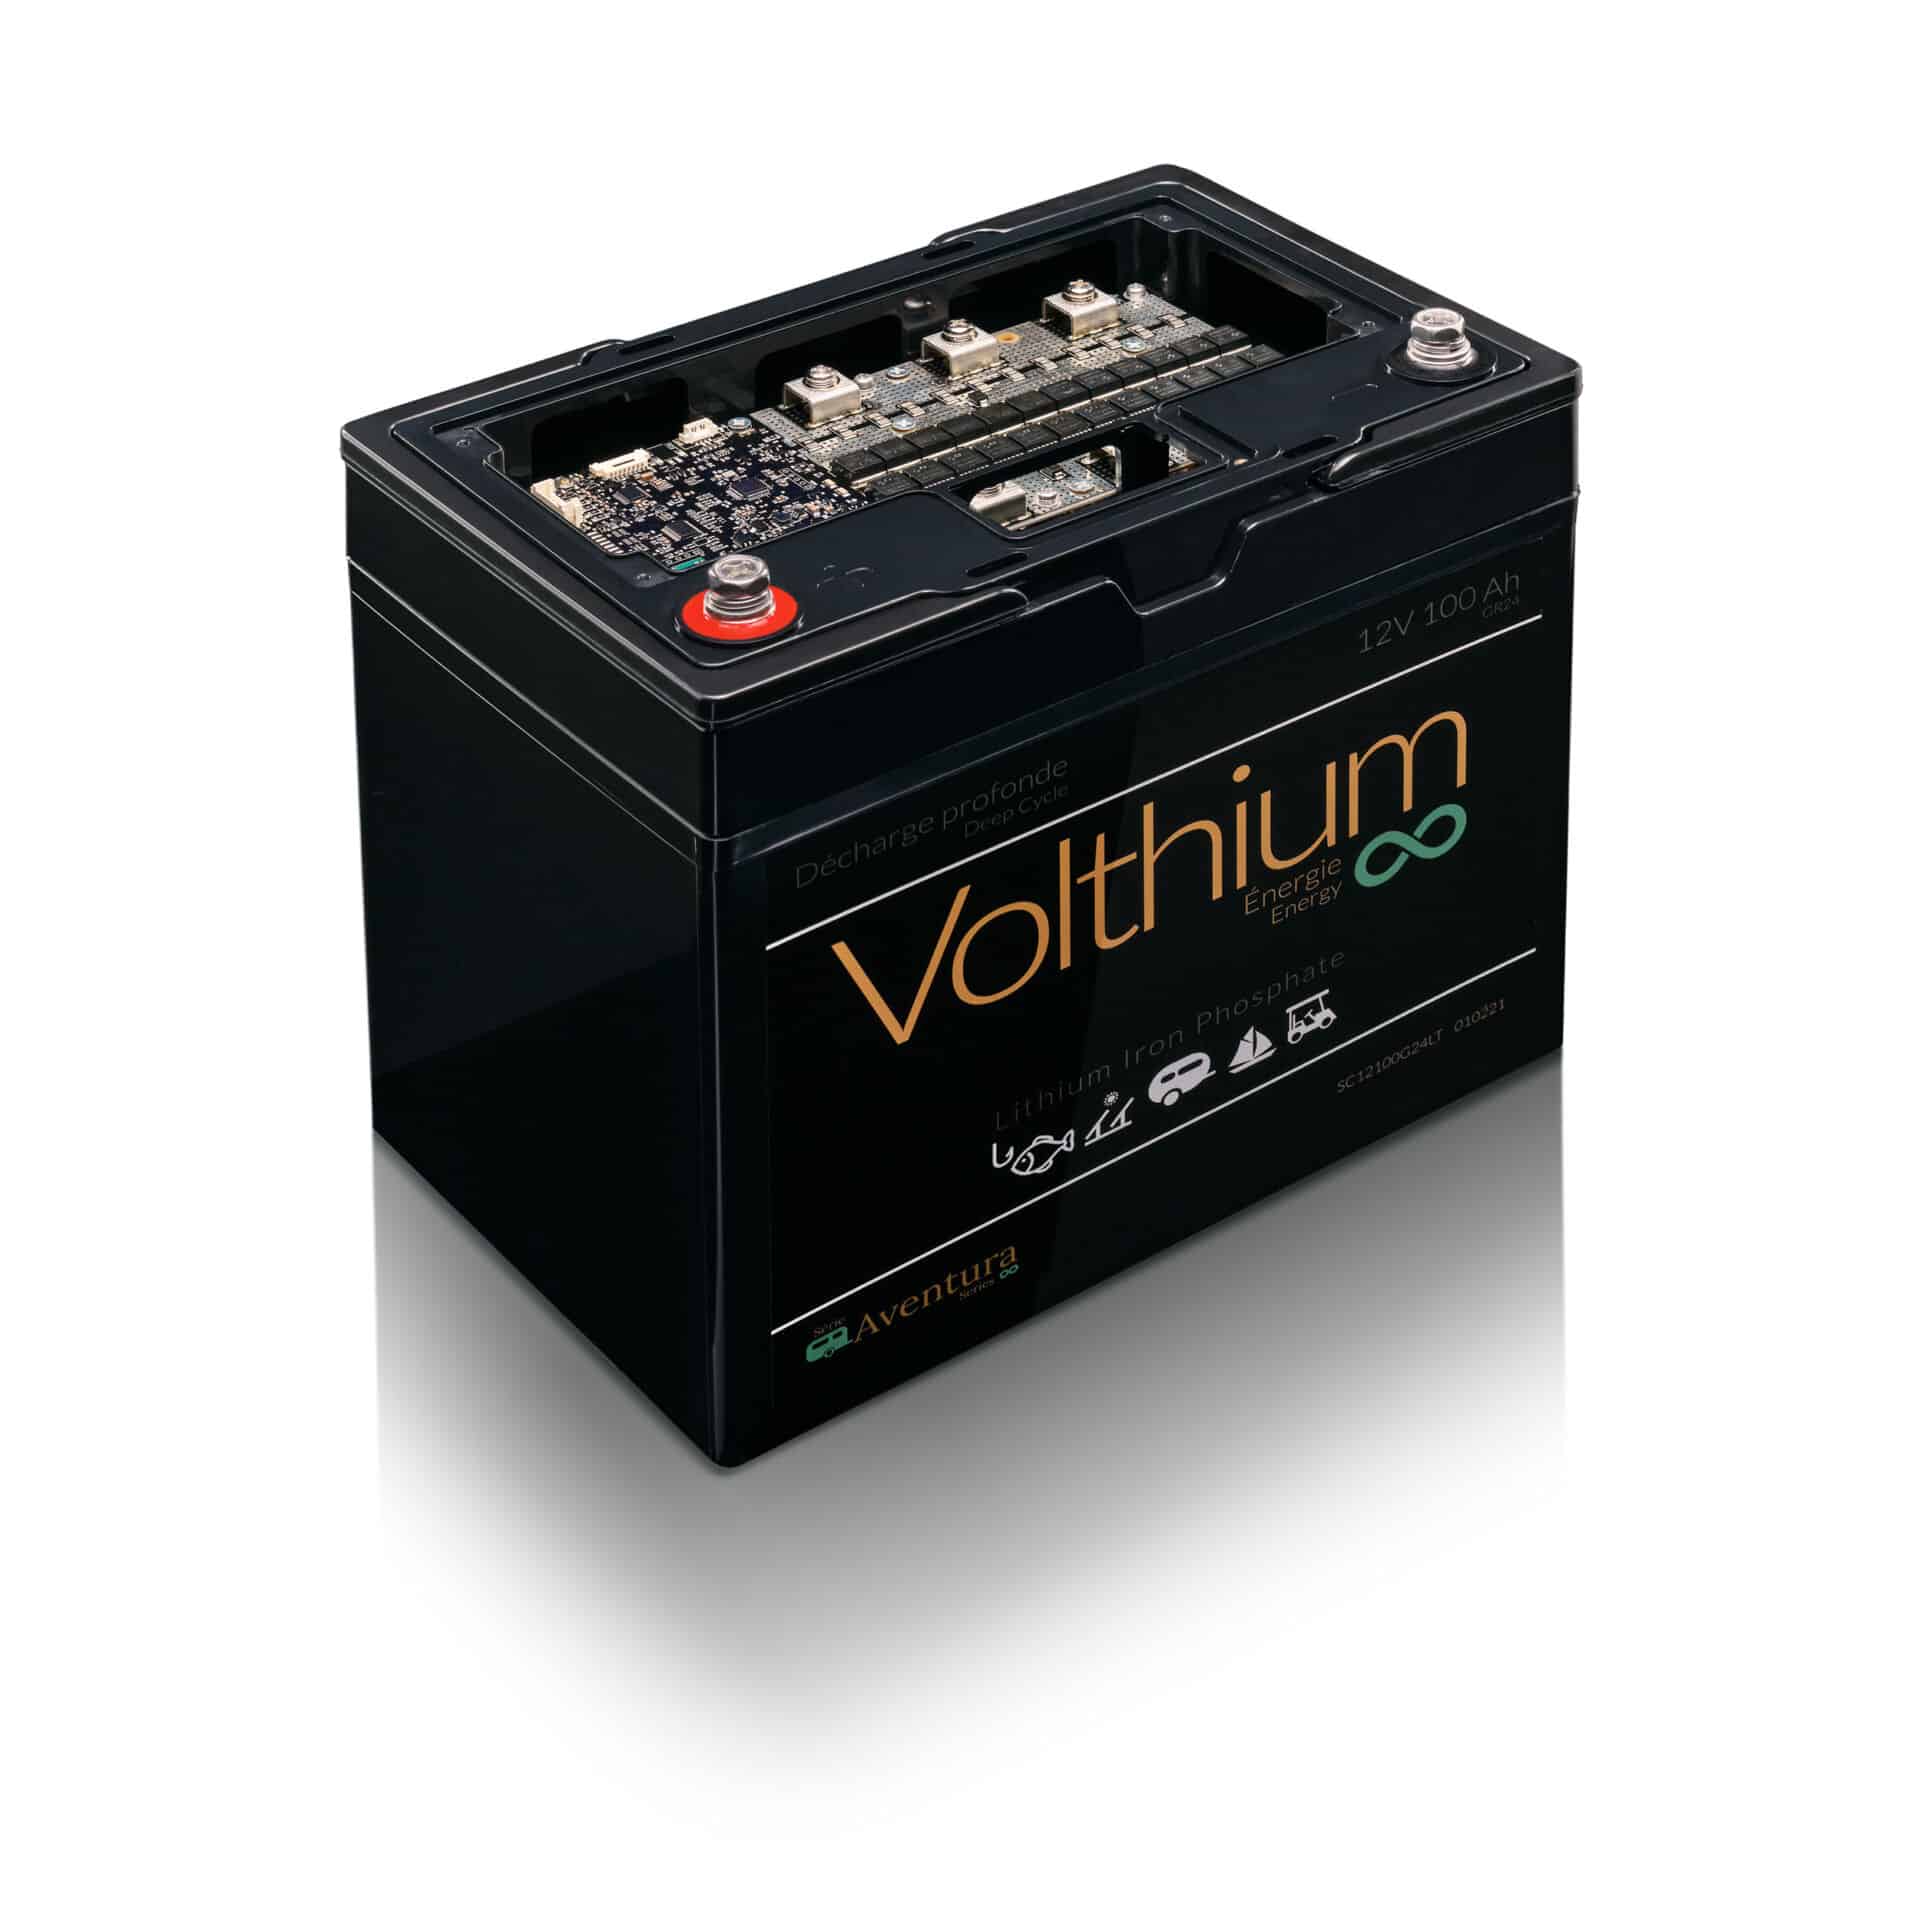 Batterie 12V 200AH - Autochauffante (DUAL) - Volthium